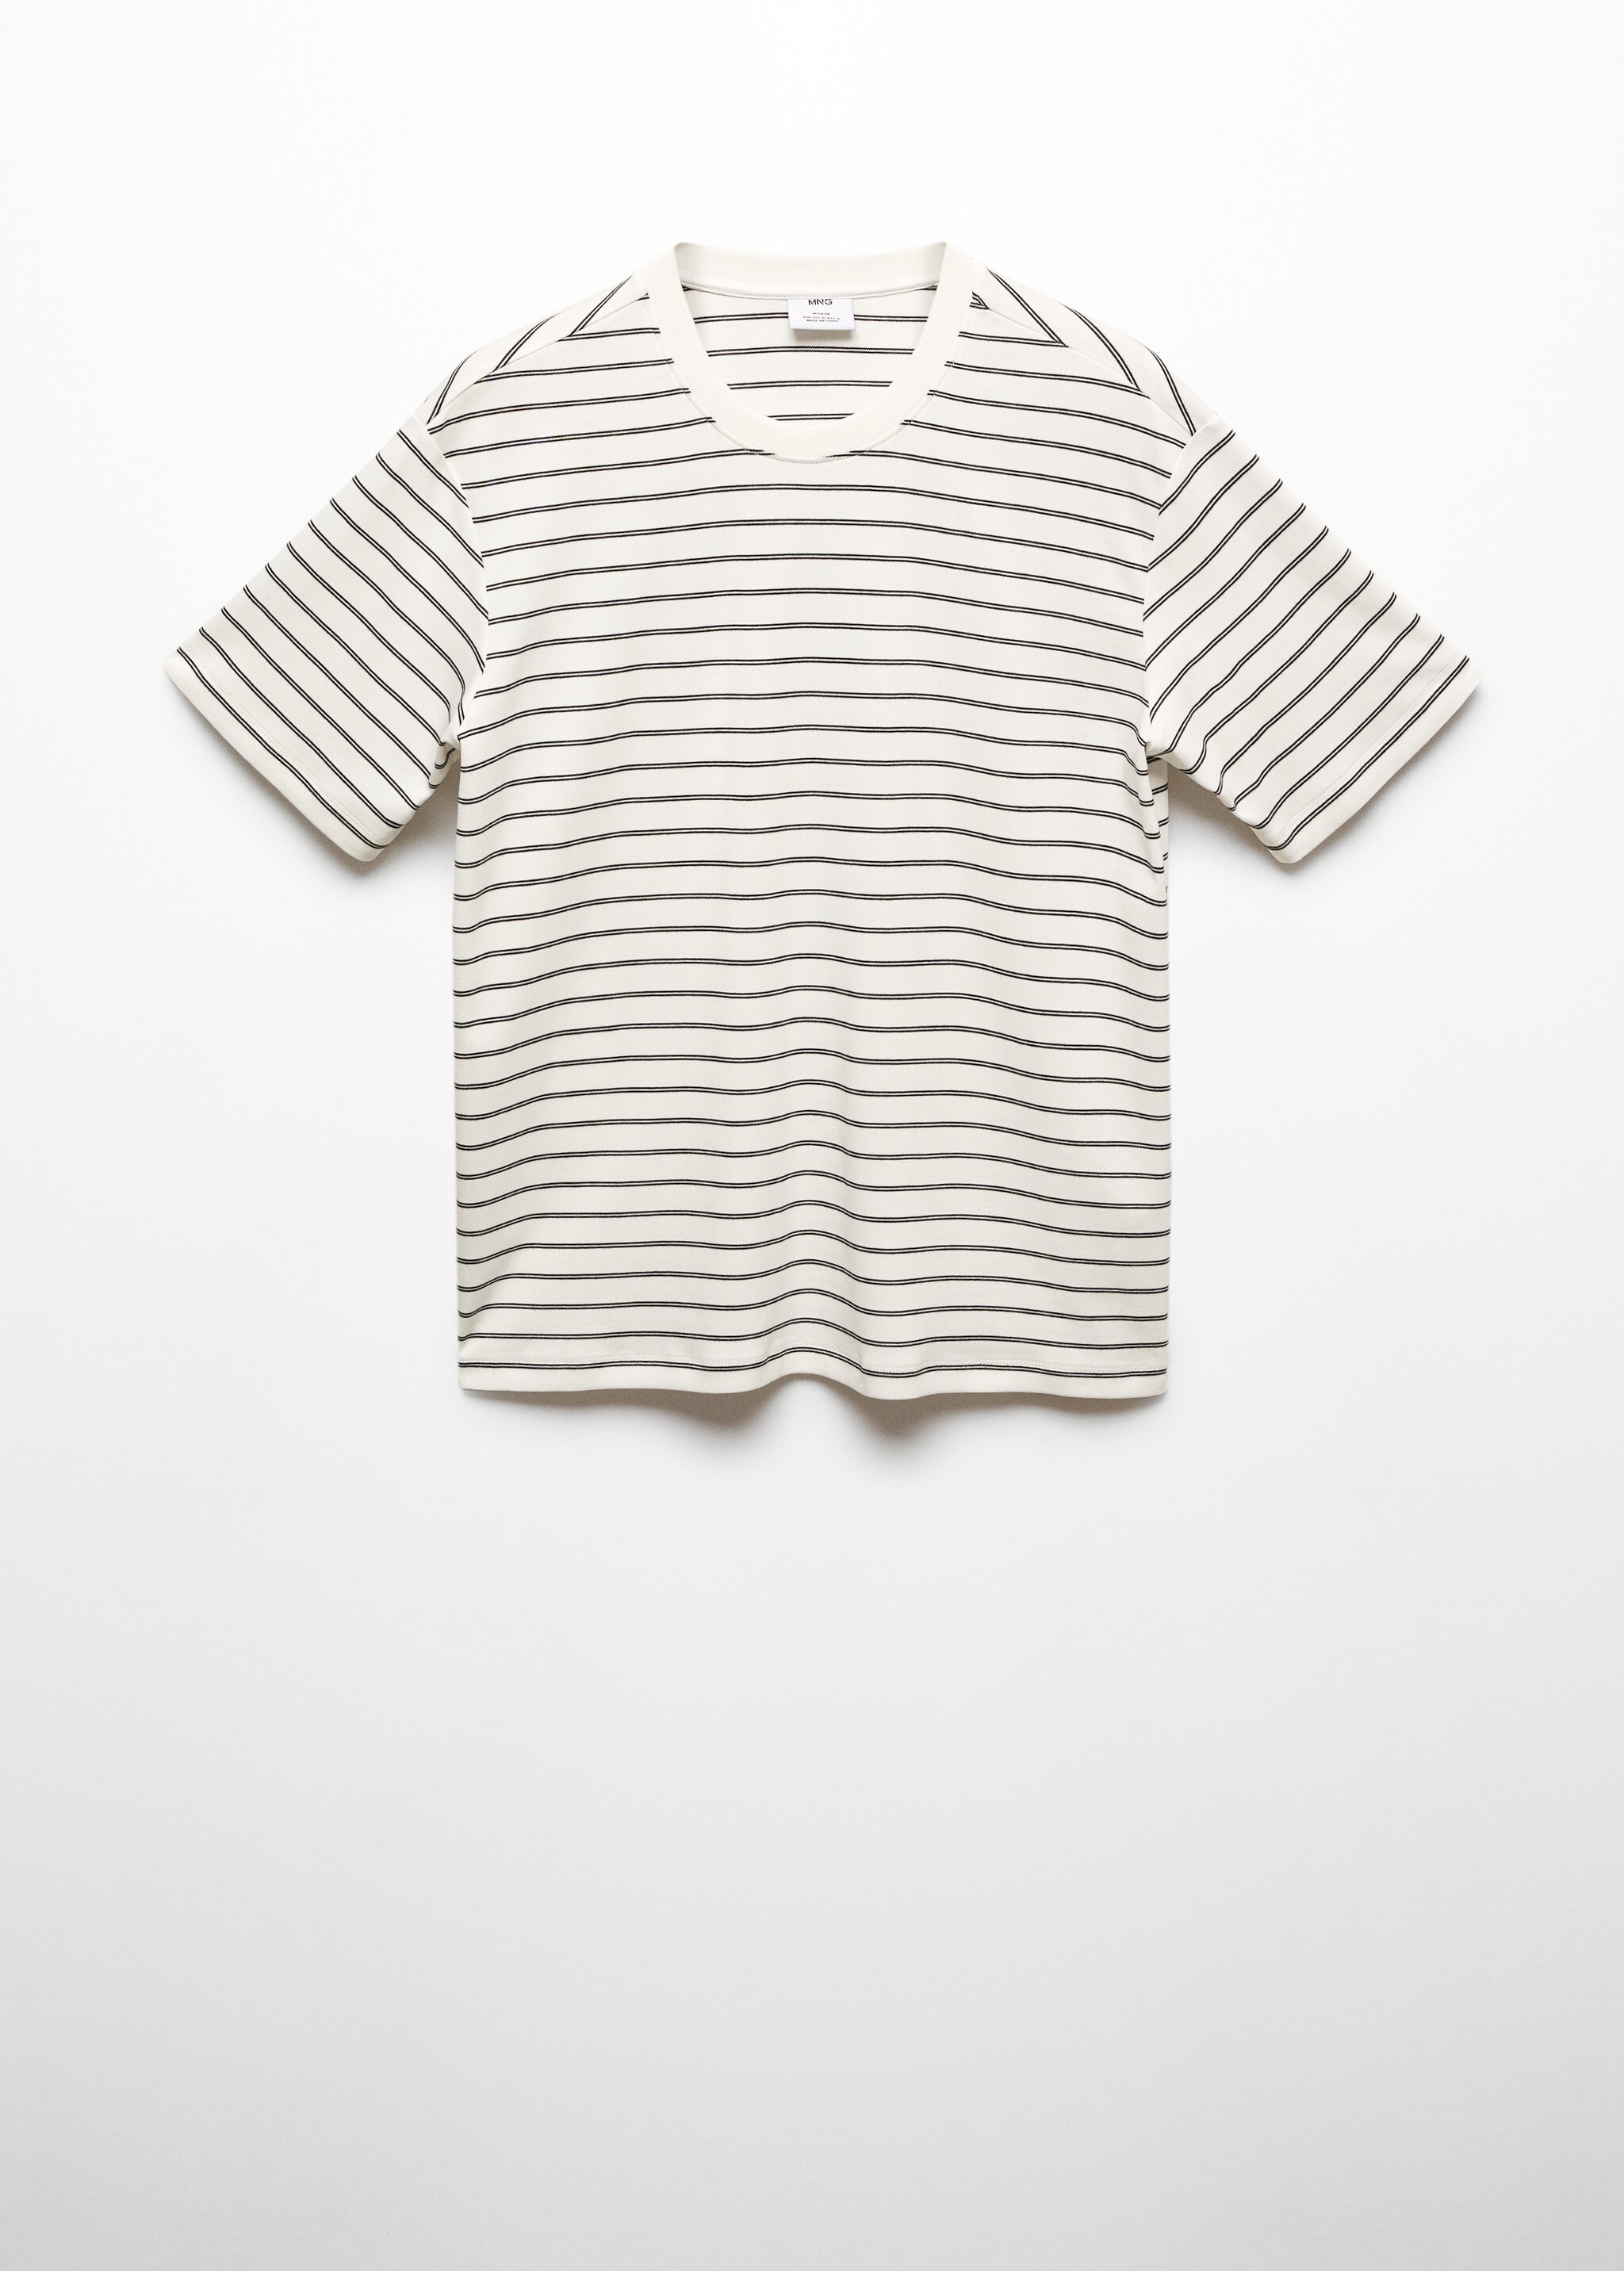 Camiseta 100% algodón rayas - Artículo sin modelo